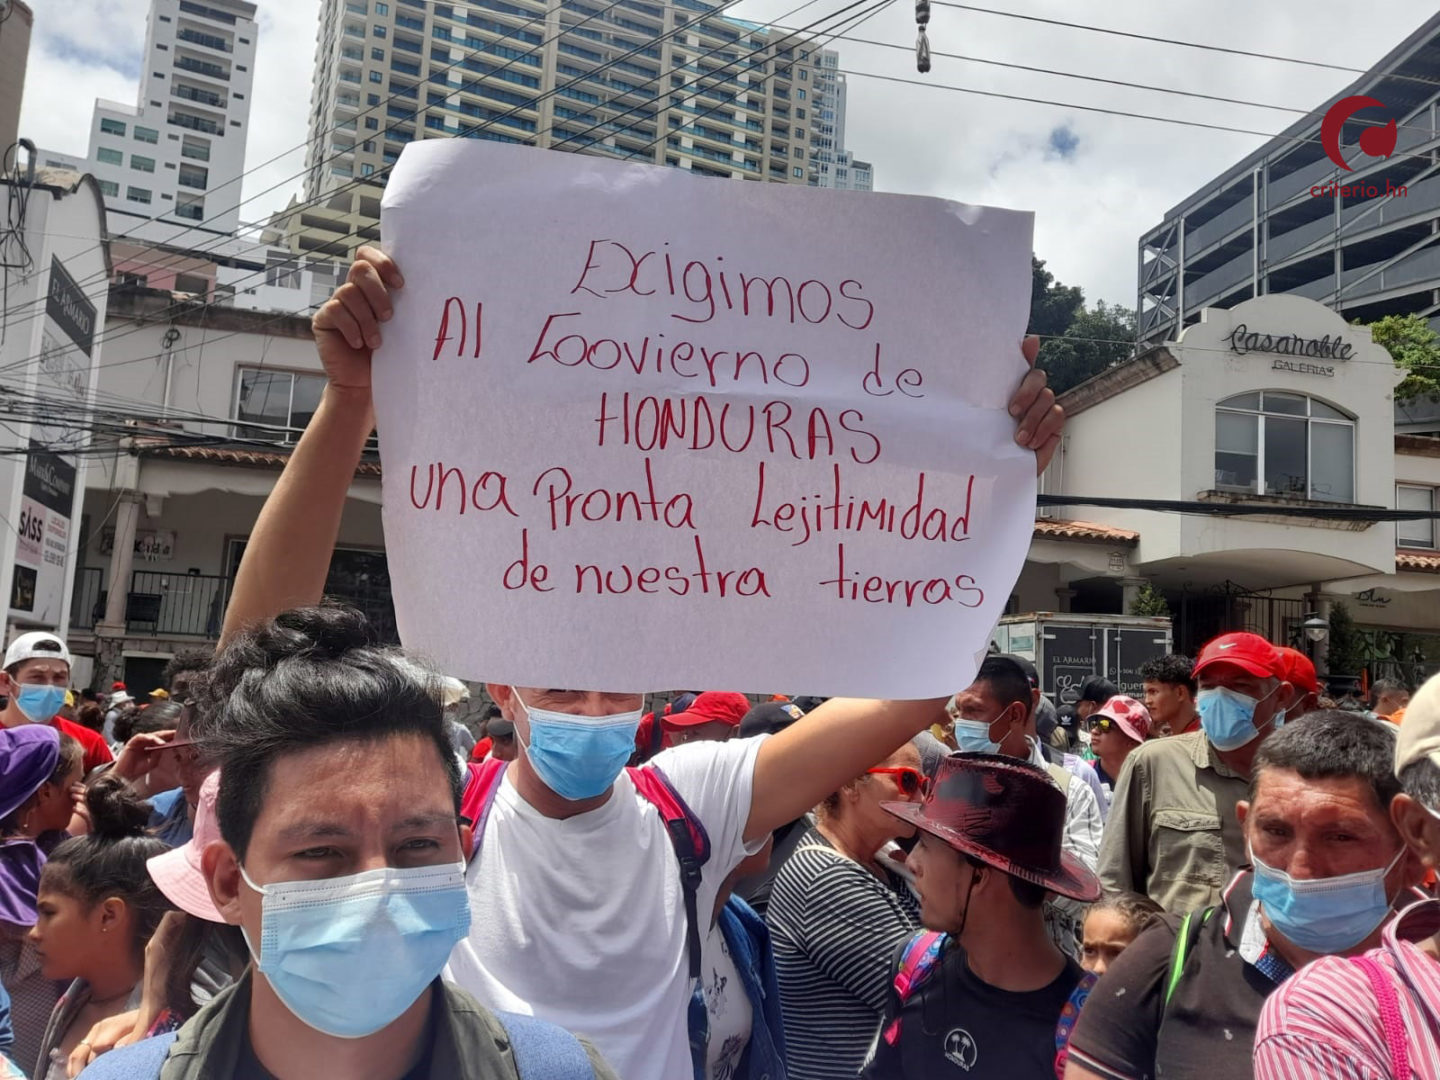 Campesinos del Aguán exigen al gobierno cumplimiento de acuerdo